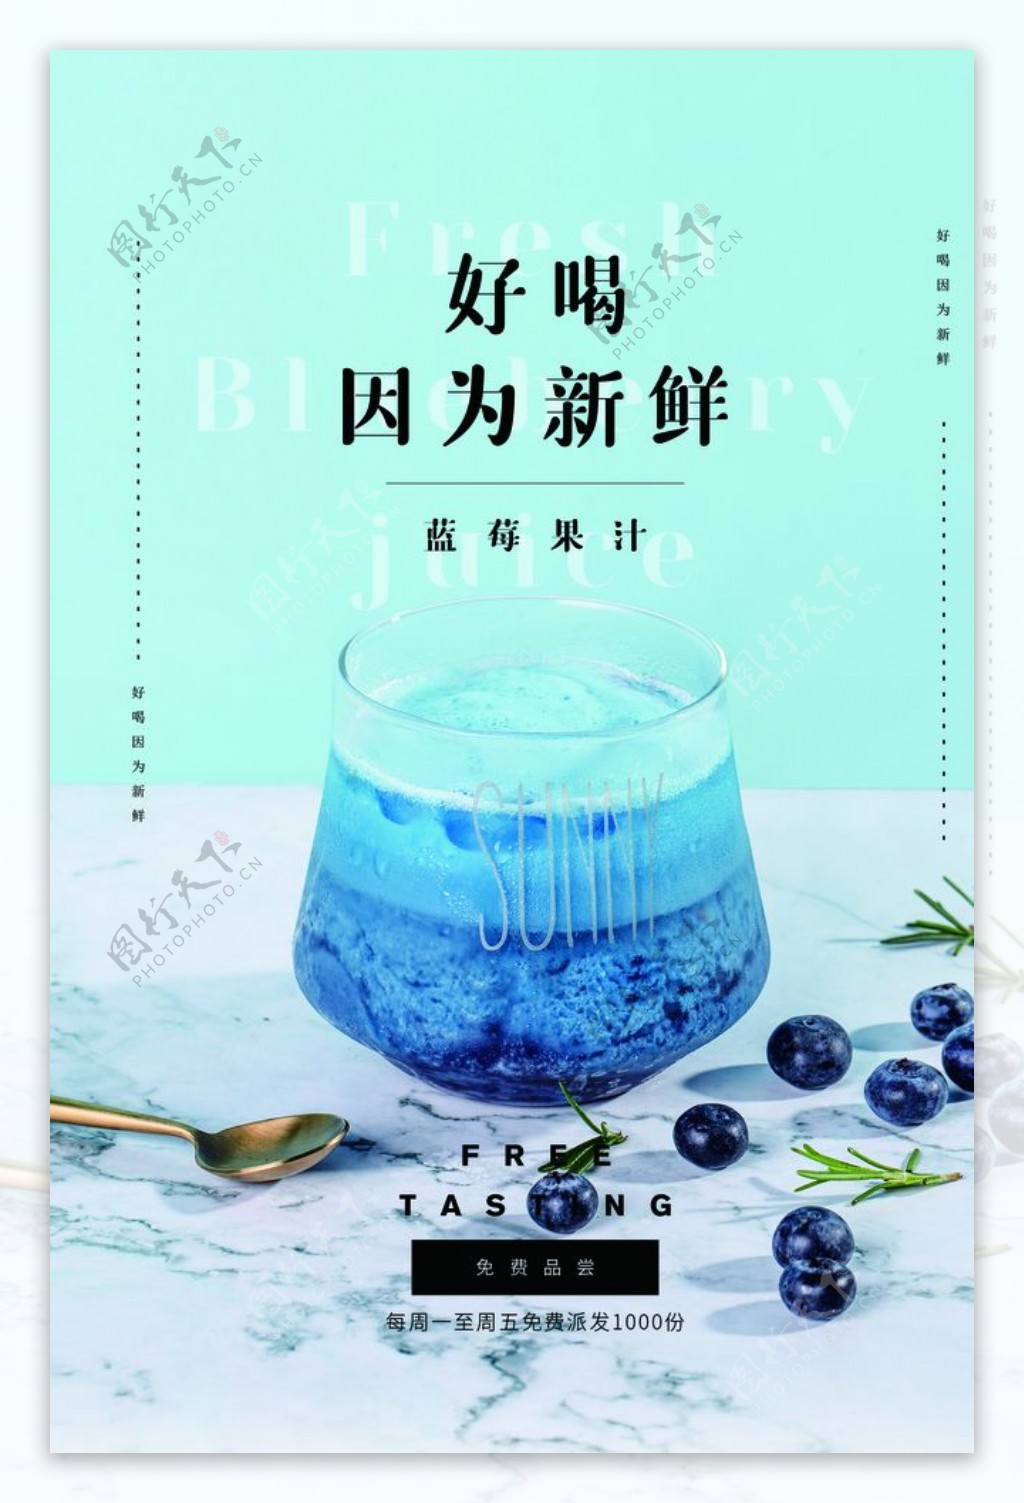 蓝莓果汁饮料活动促销海报素材